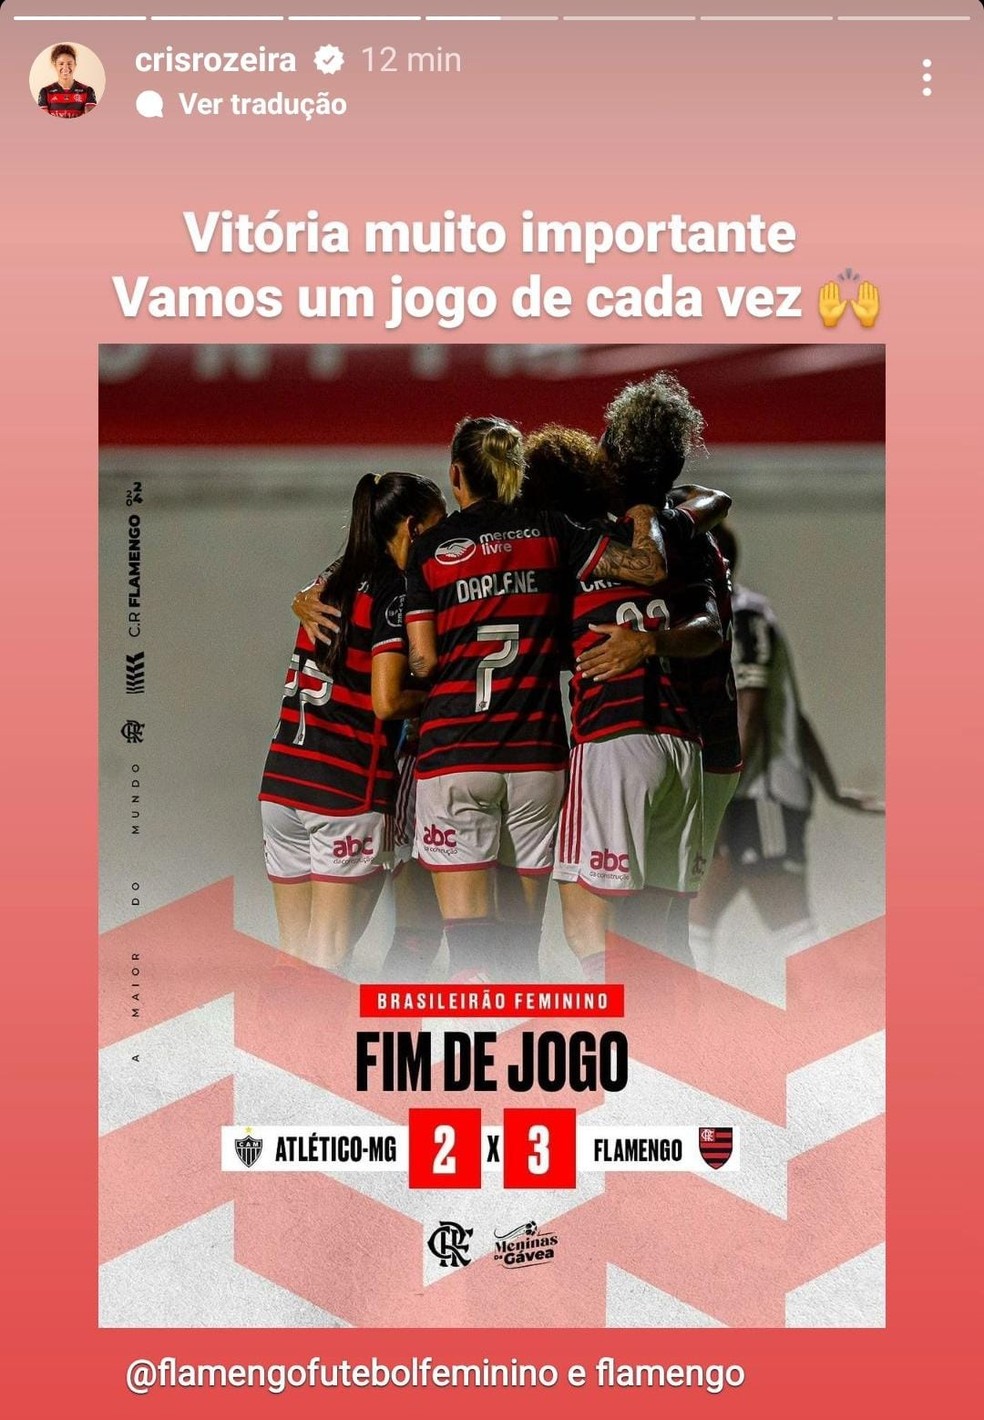 Cristiane comemora vitória do Flamengo no Brasileiro Feminino